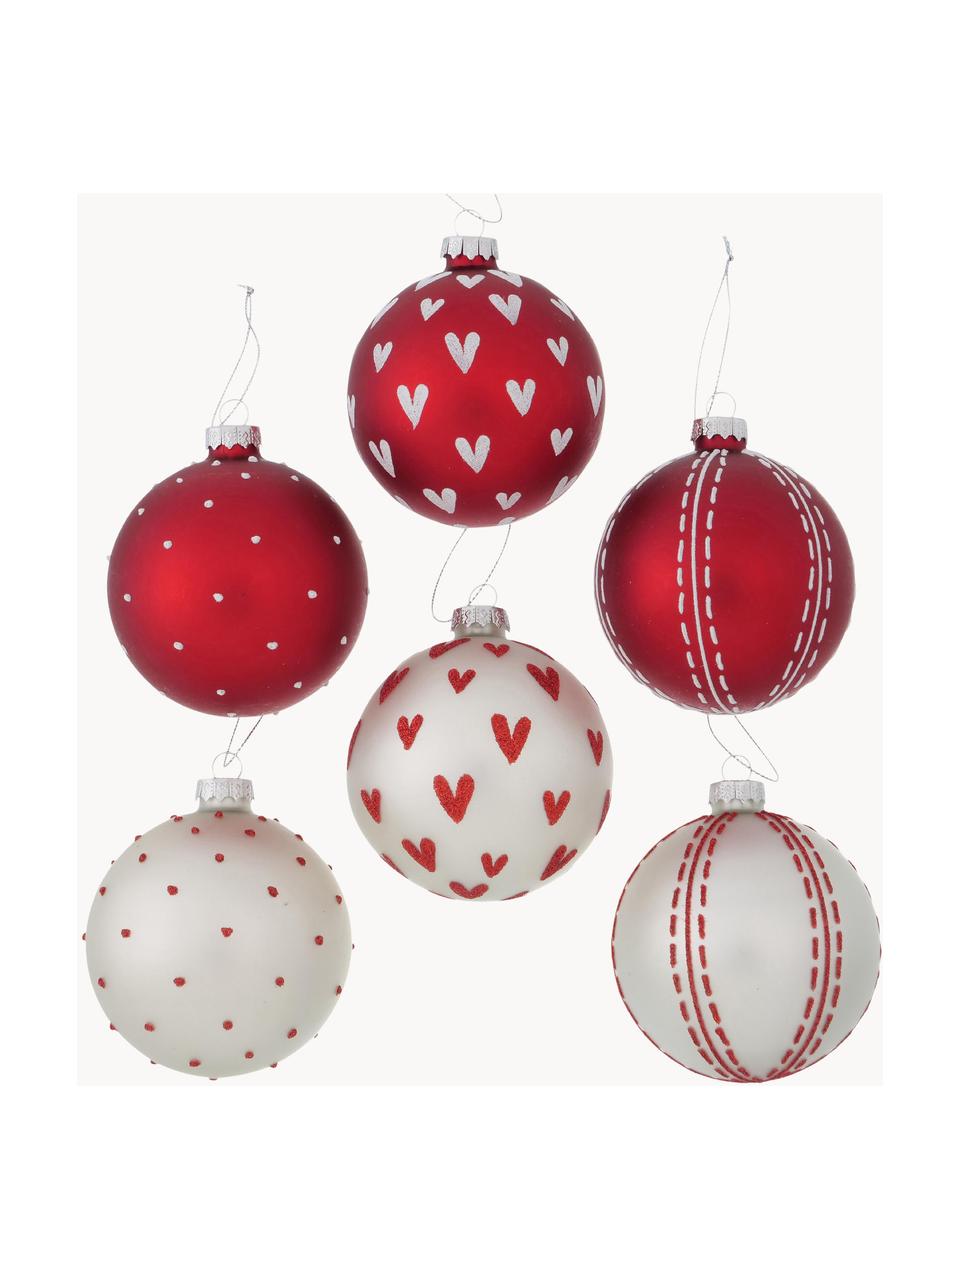 Sada ručně vyrobených vánočních ozdob Herzilein, 12 dílů, Červená, bílá, stříbrná, Ø 8 cm